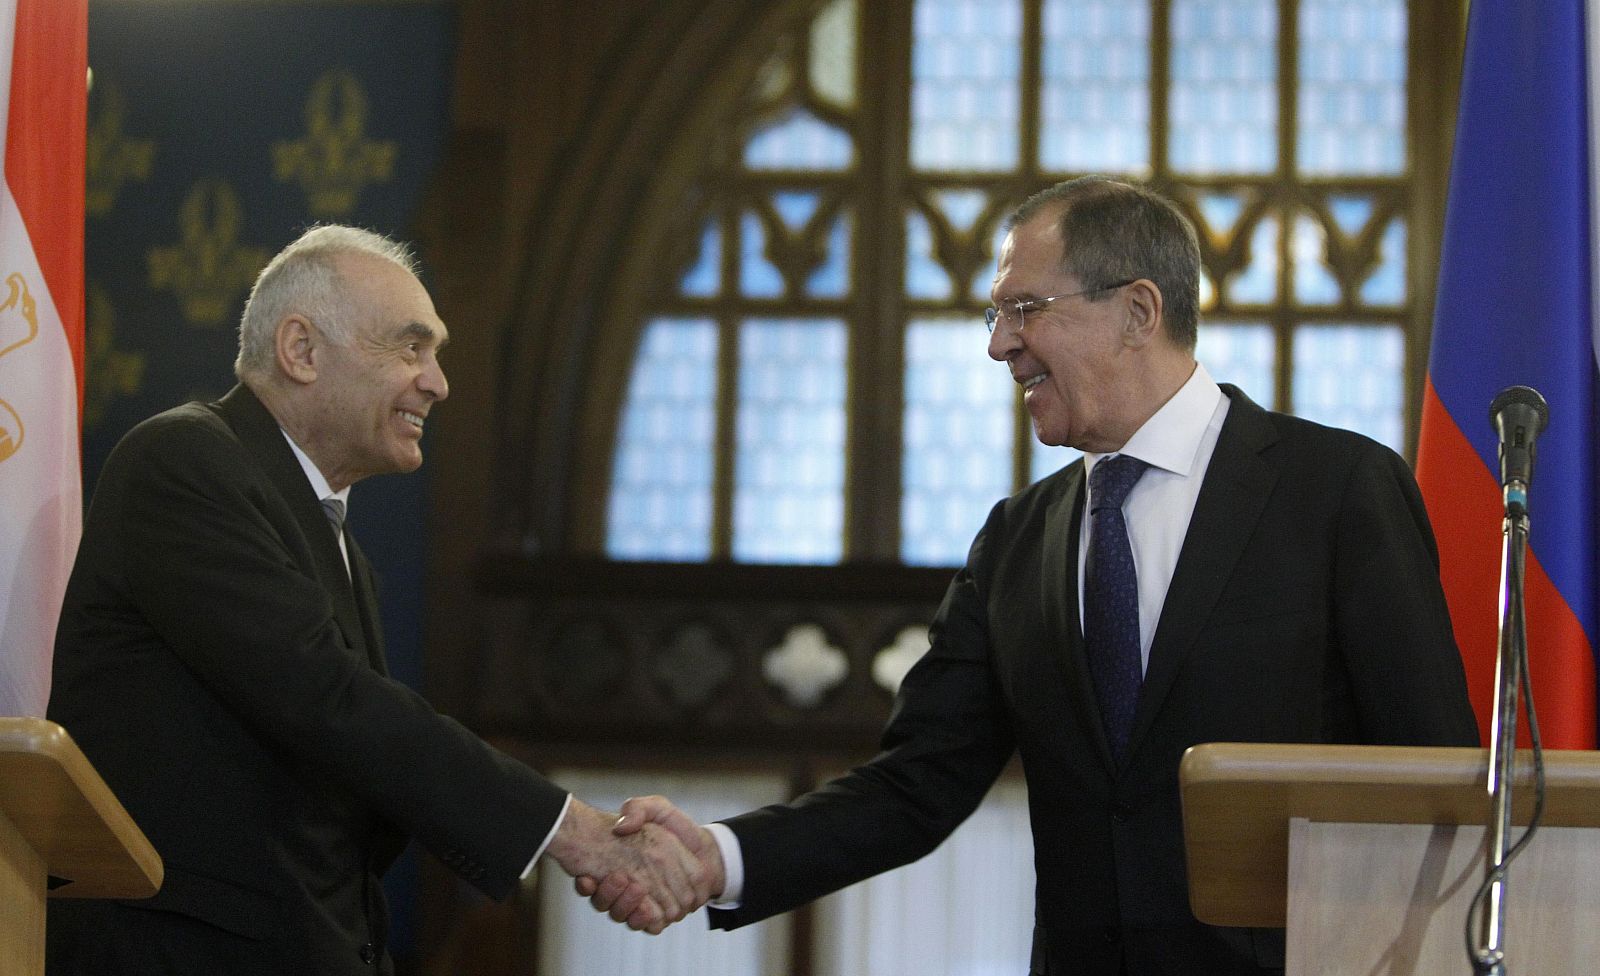 El ministro de Exteriores de Rusia, Sergei Lavrov (derecha) estrecha la mano de su homólogo egipcio, Mohamed Kamal Amr